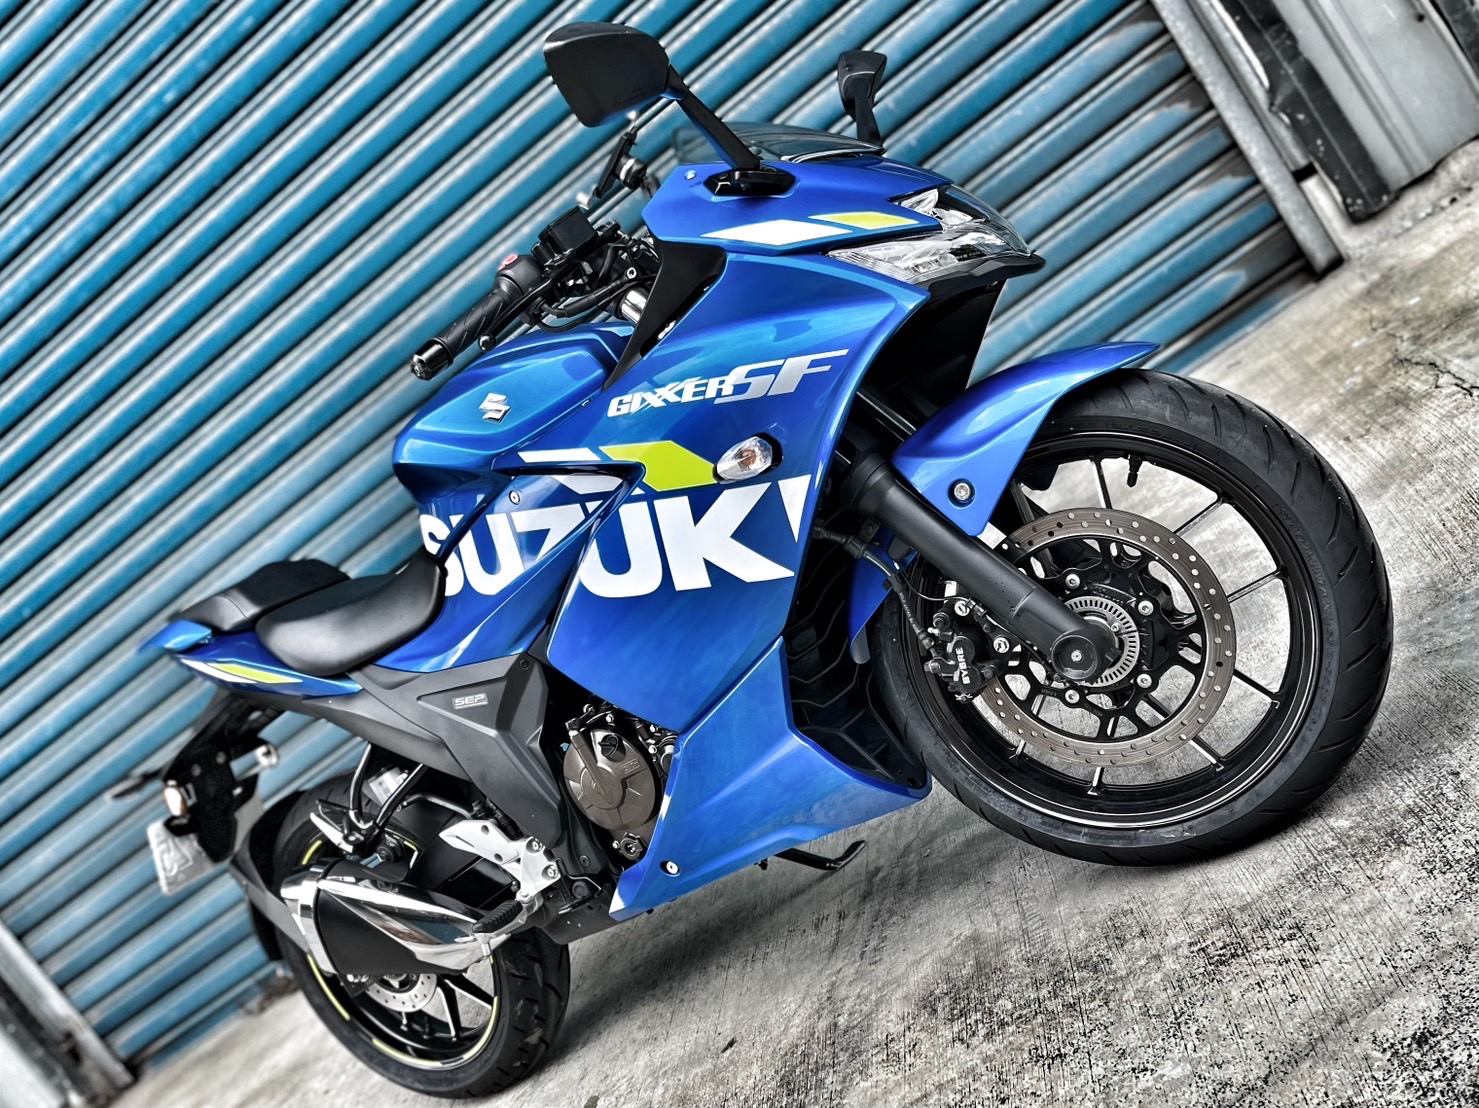 【小資族二手重機買賣】SUZUKI GIXXER 250 SF - 「Webike-摩托車市」 無摔無事故 里程保證 小資族二手重機買賣